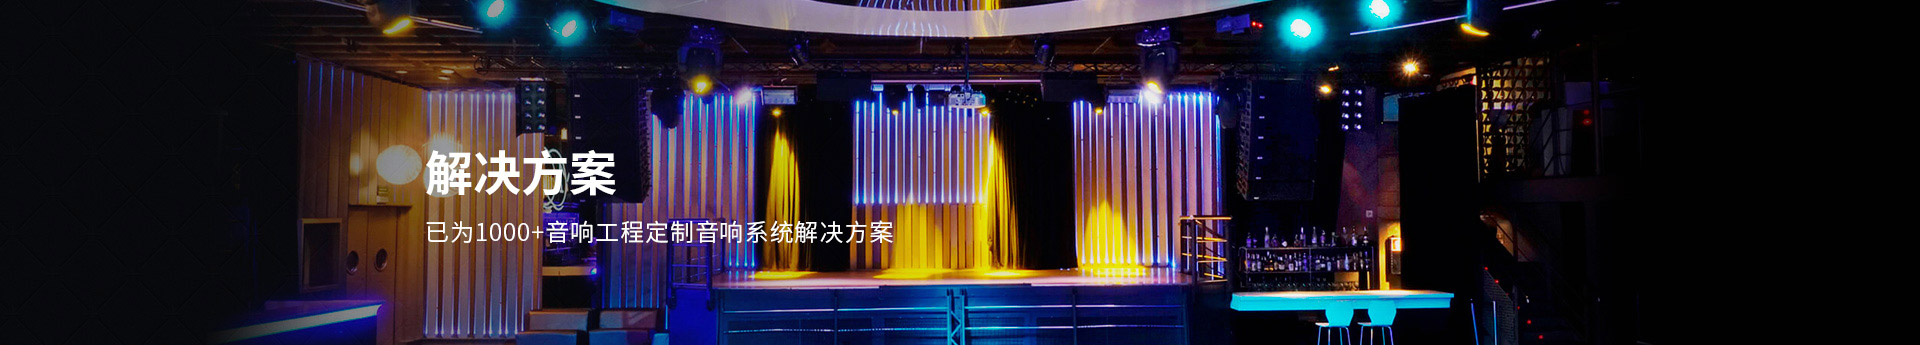 北京西雅林科已为1000+音响工程定制音响系统解决方案